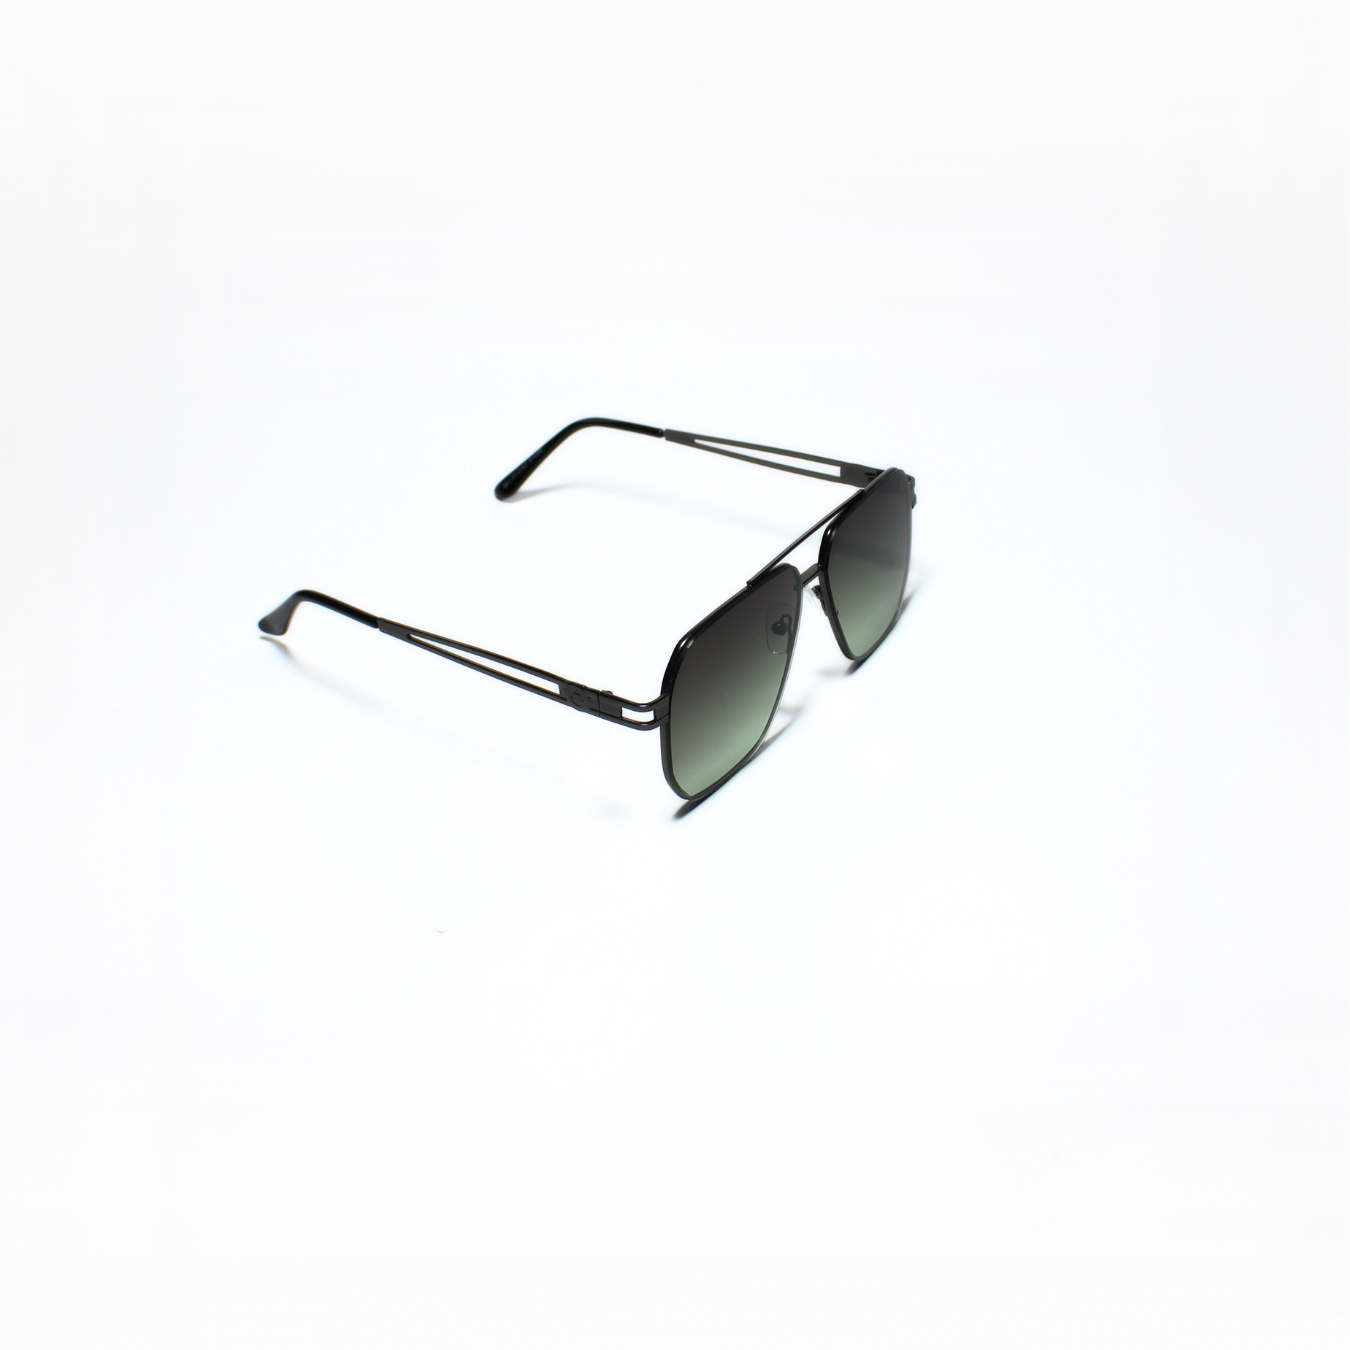 ARTHUR-I//003 I Sunglasses for Women - Specsview